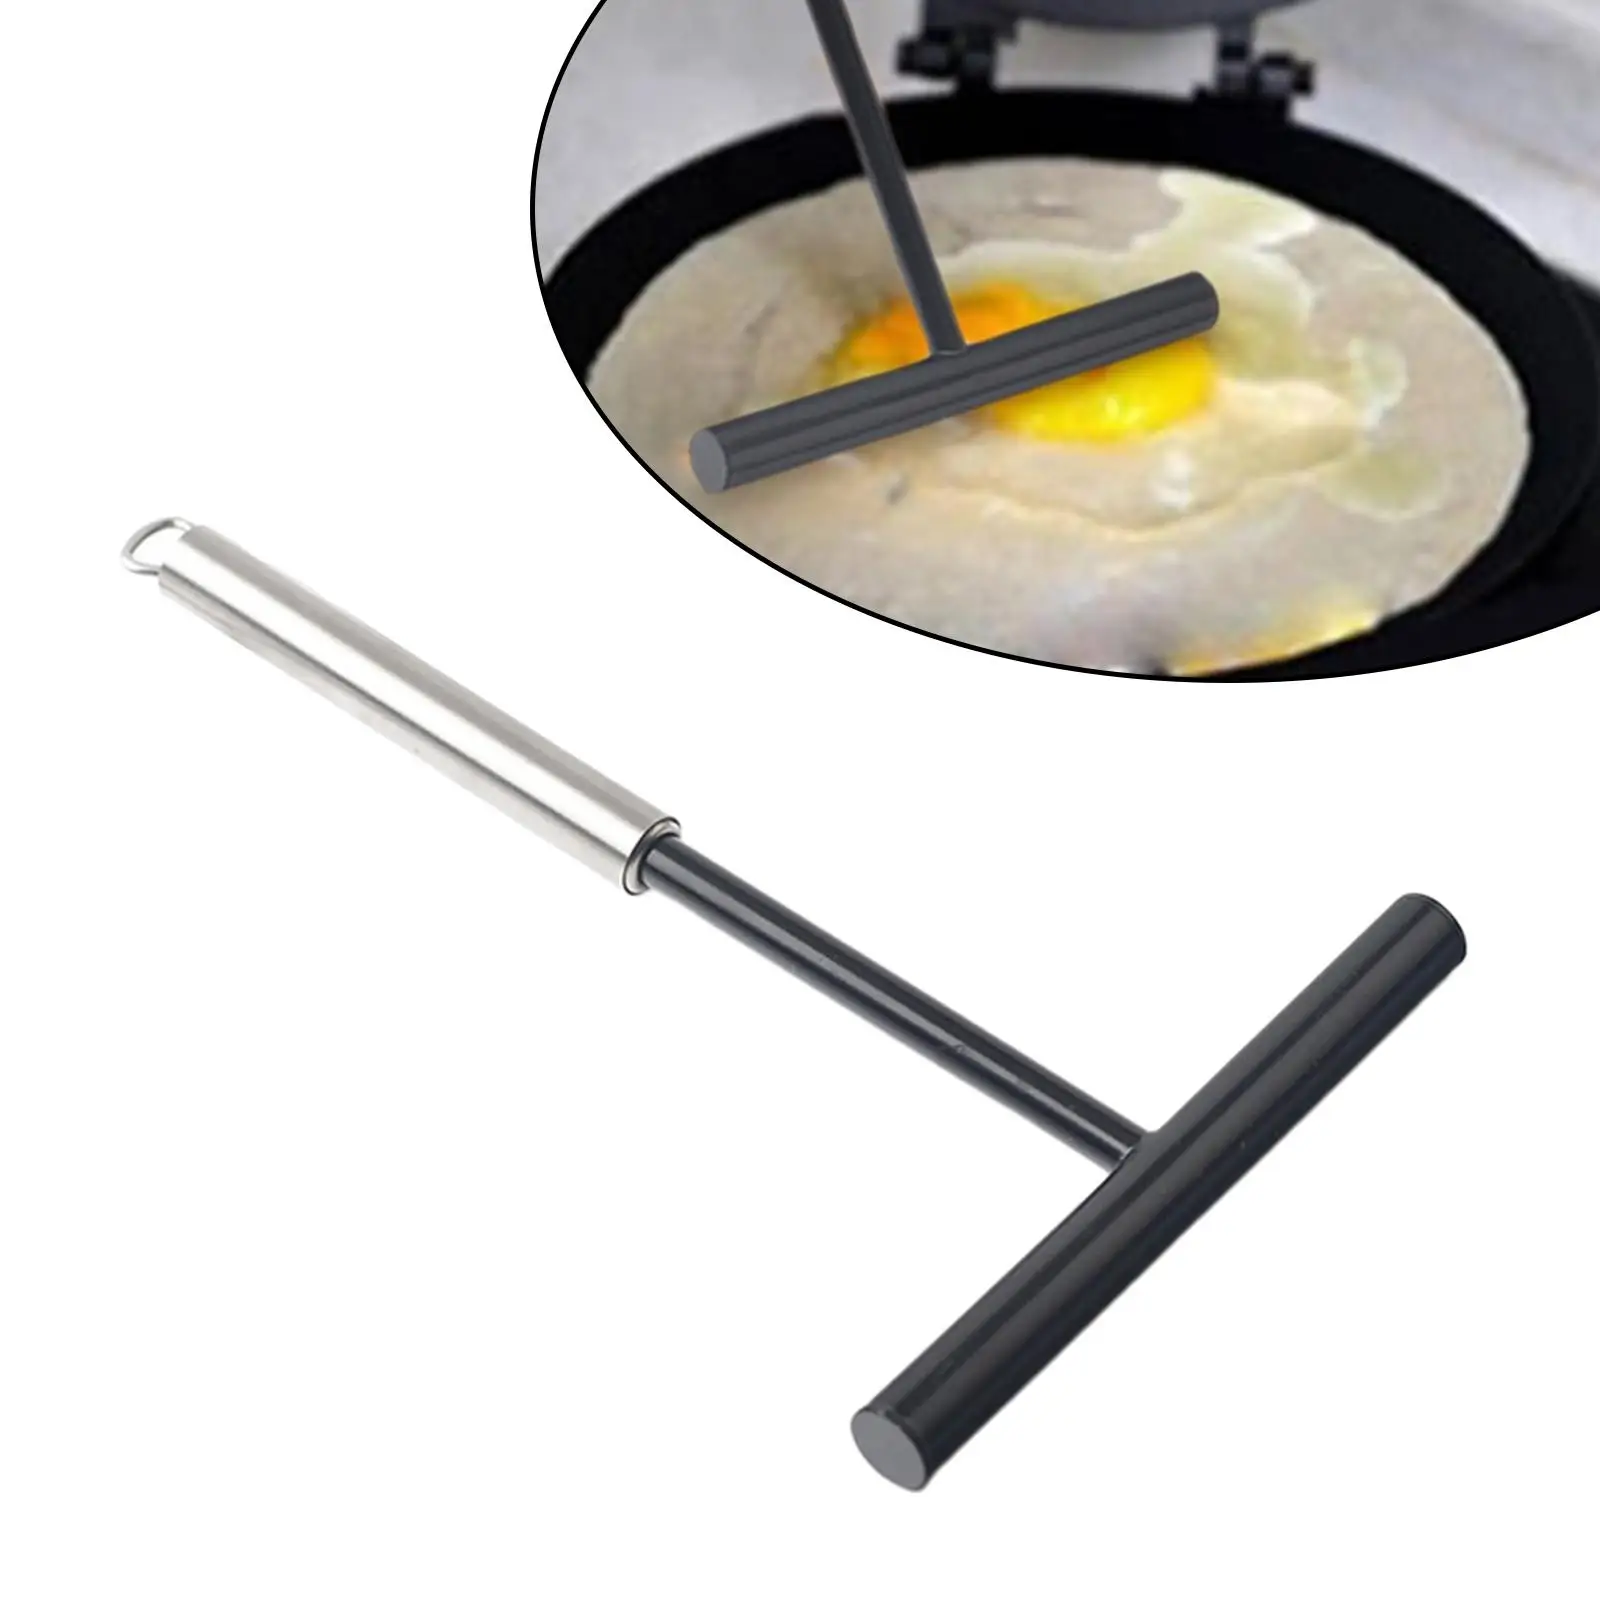 T Shape Pancake Batter Spreader Scraper Non Stick for Household Kitchen